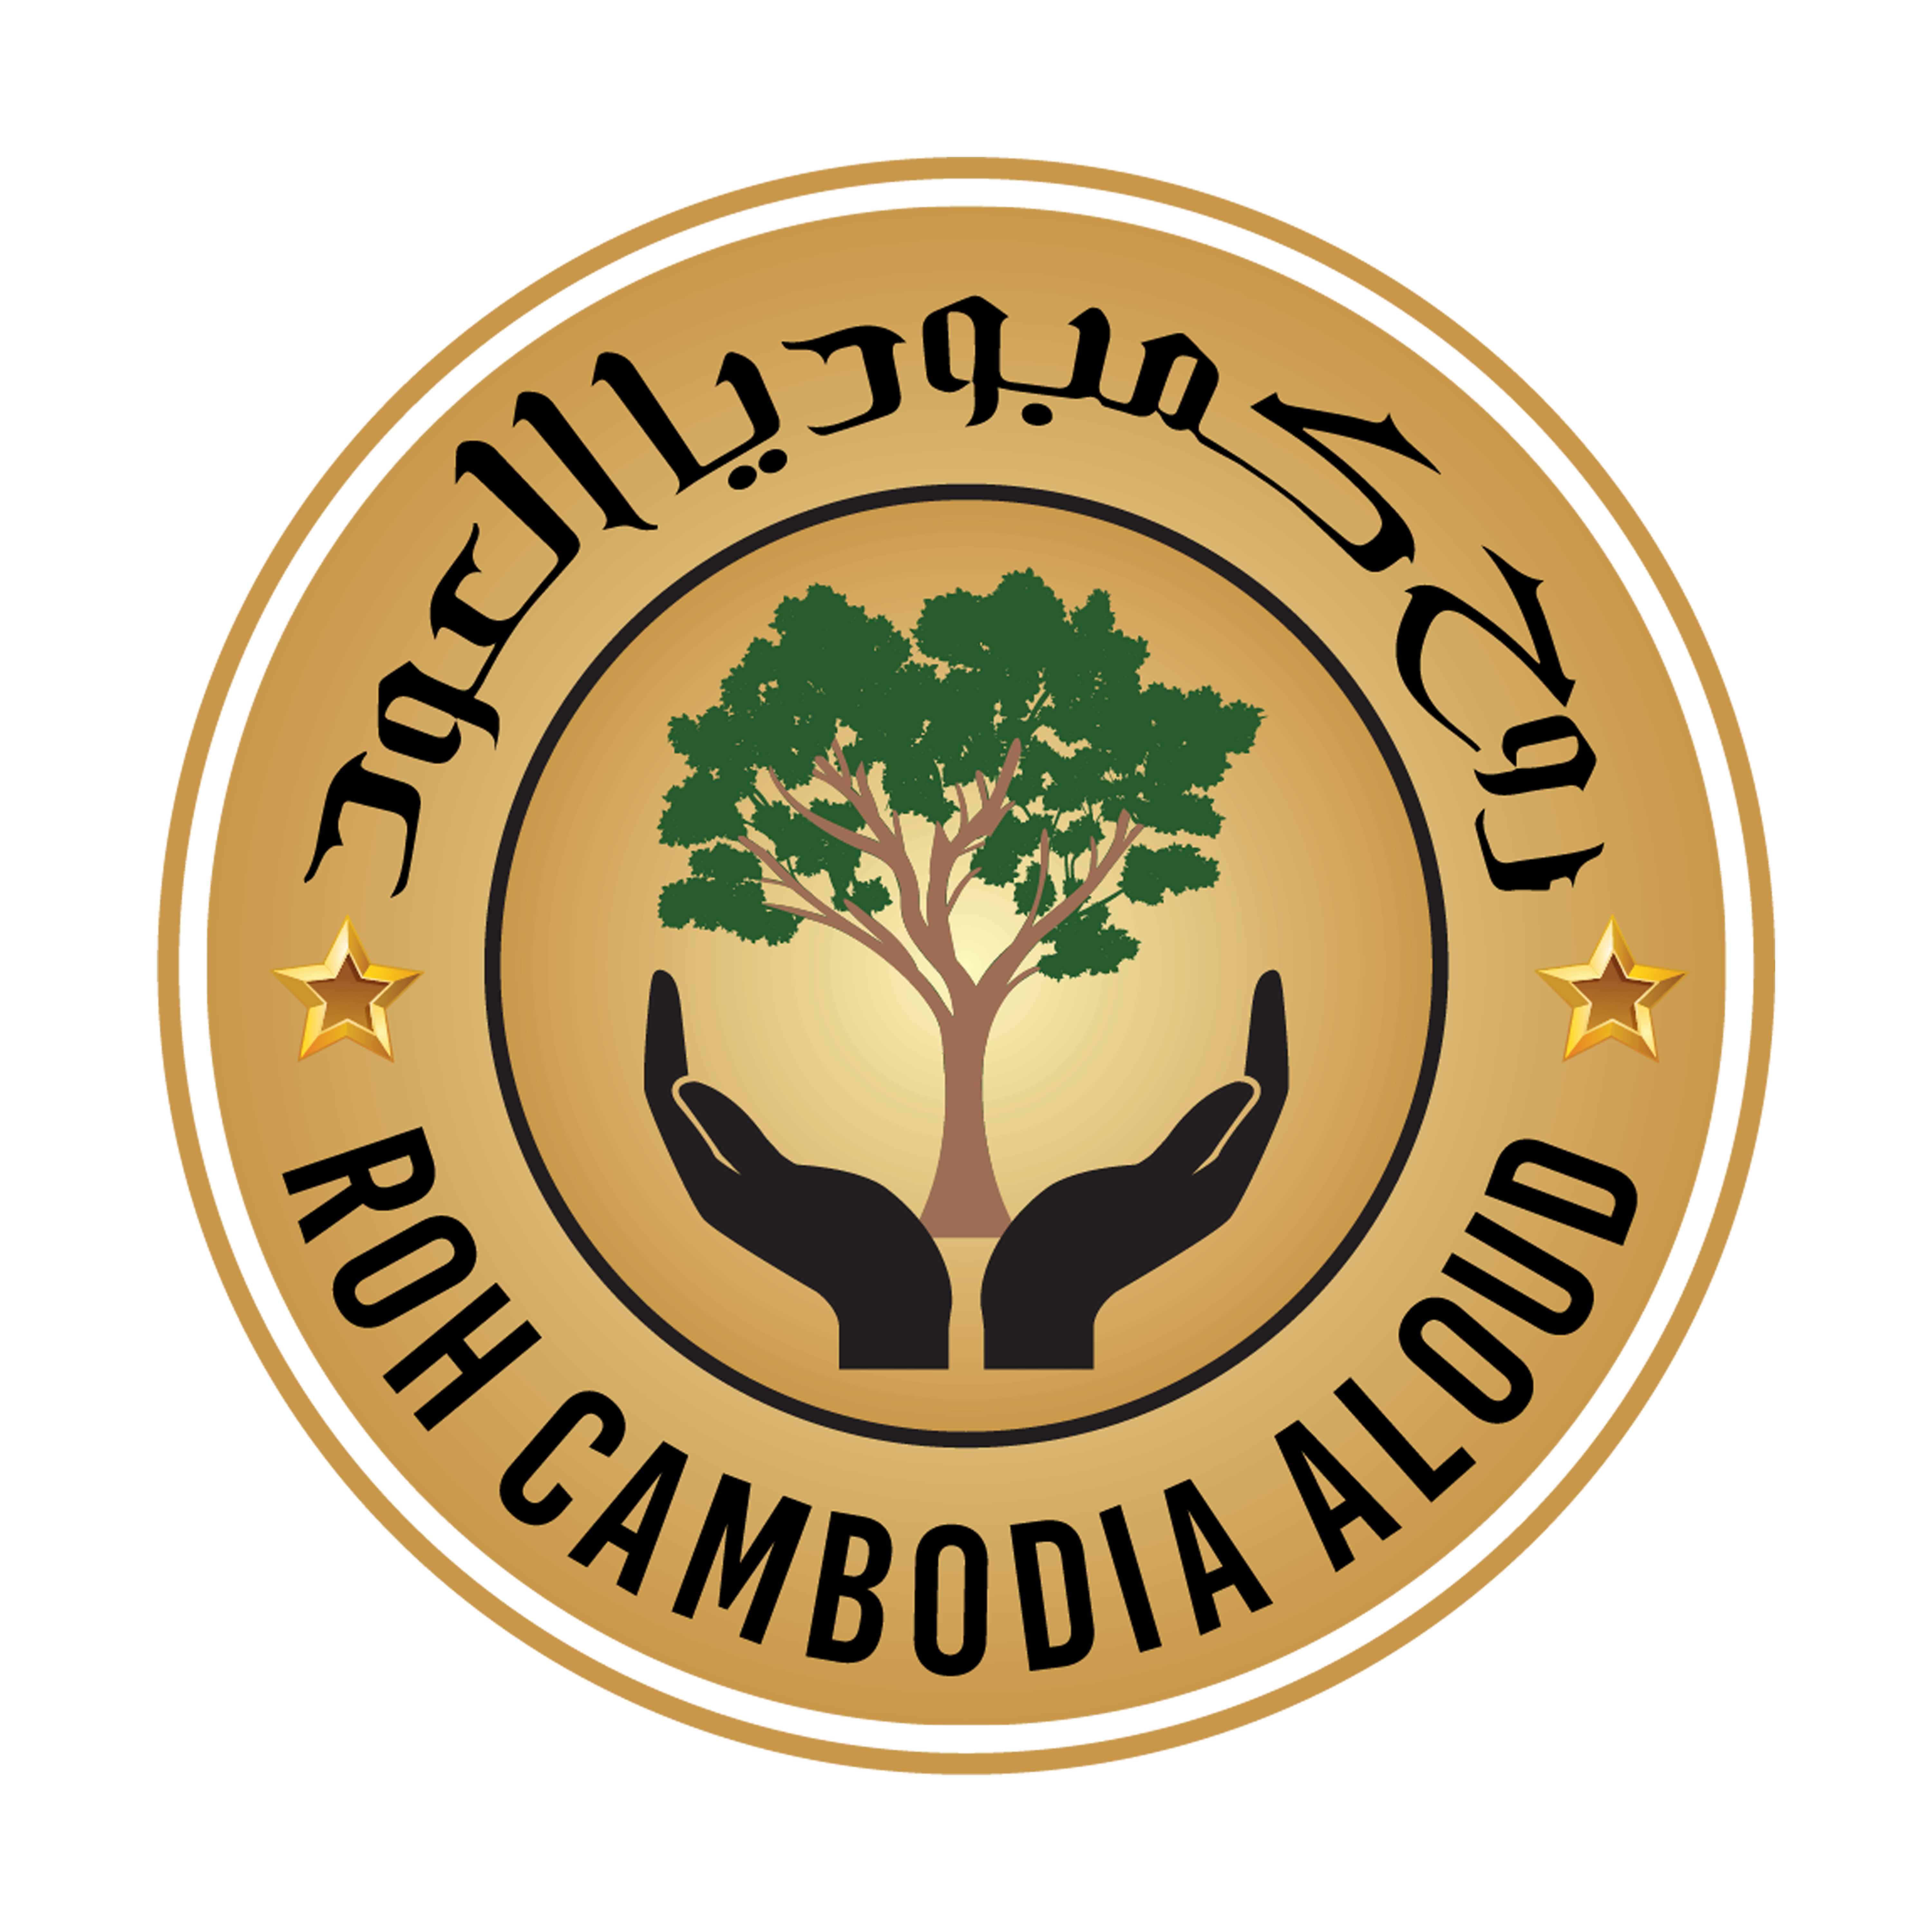 Roh Cambodia Al oud